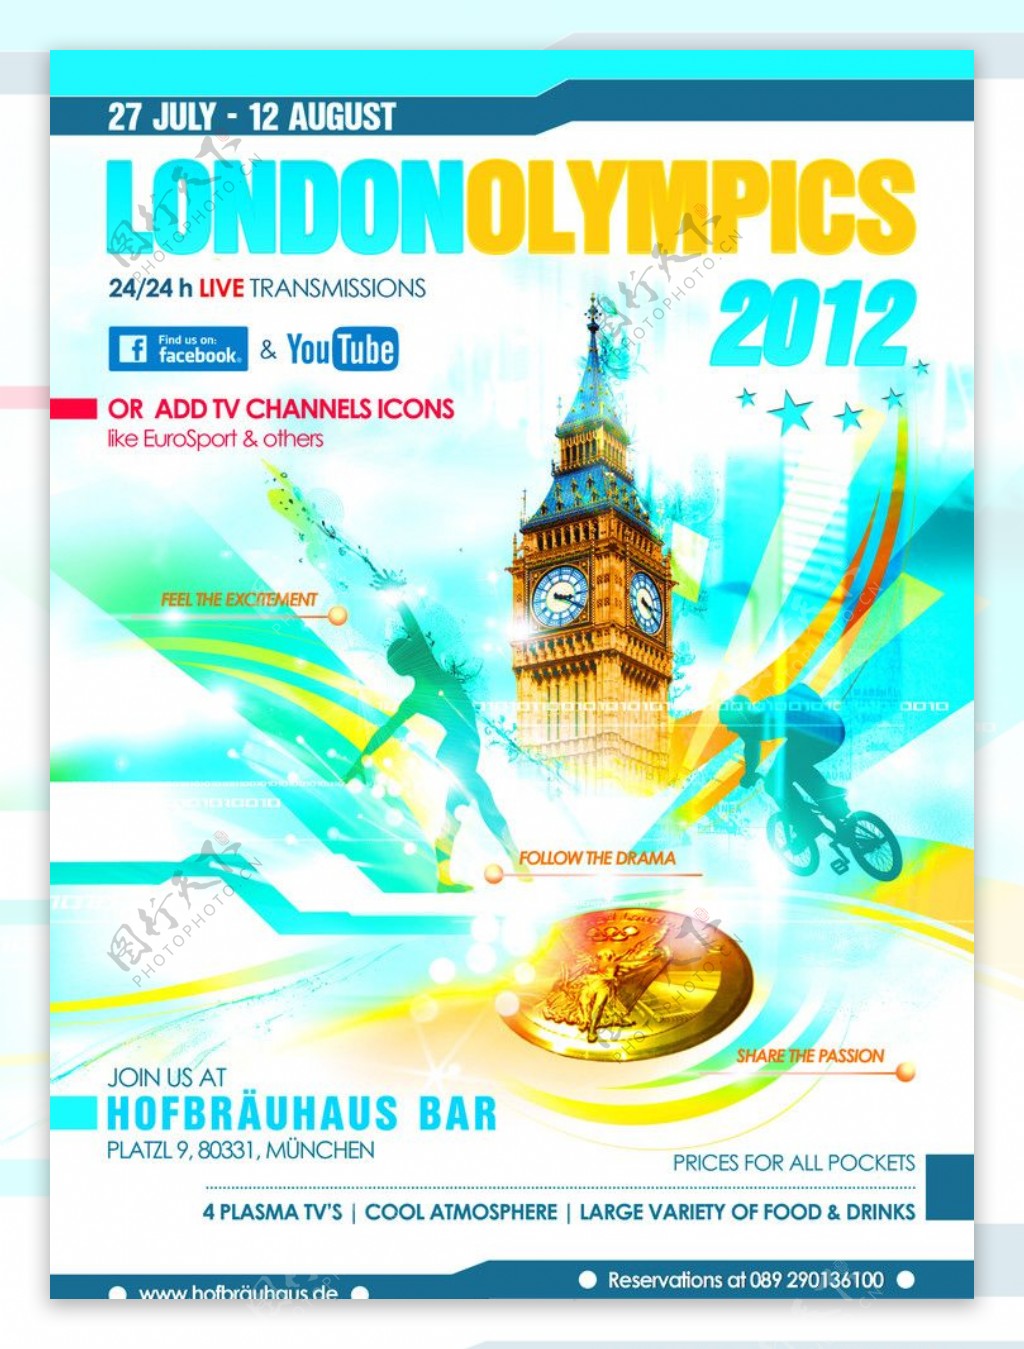 伦敦奥运会海报图片